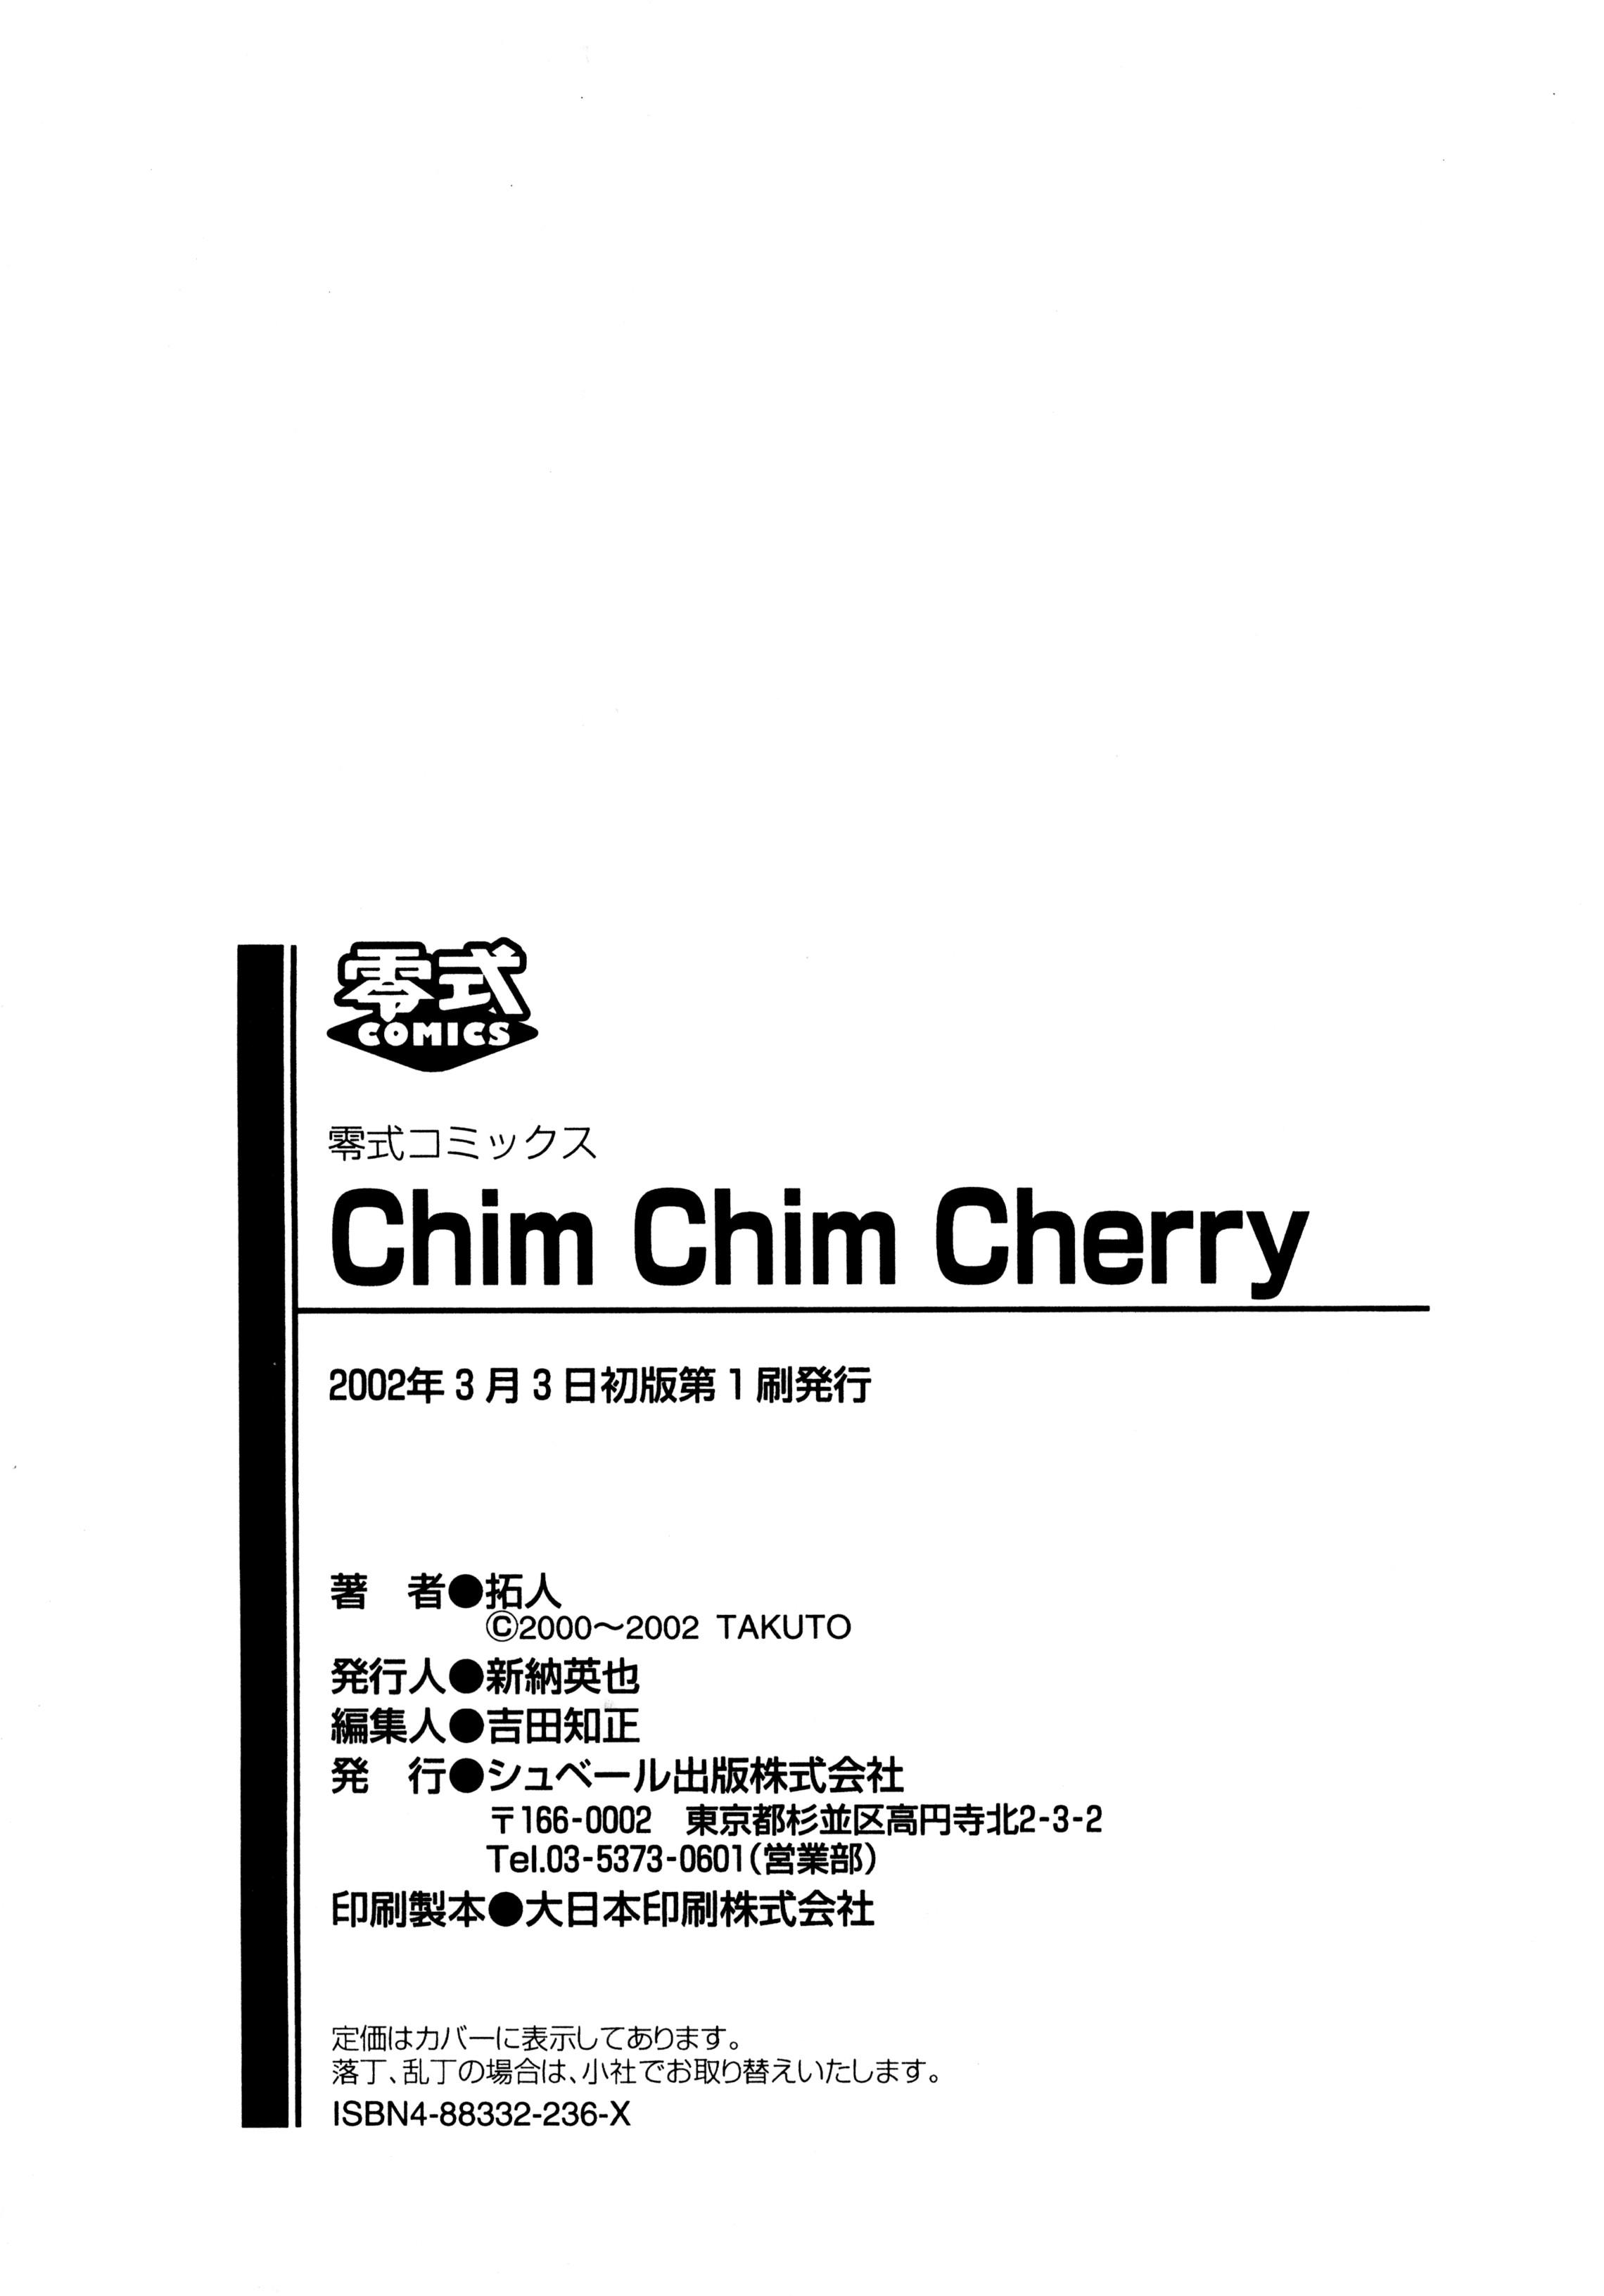 Chim Chim Cherry 191